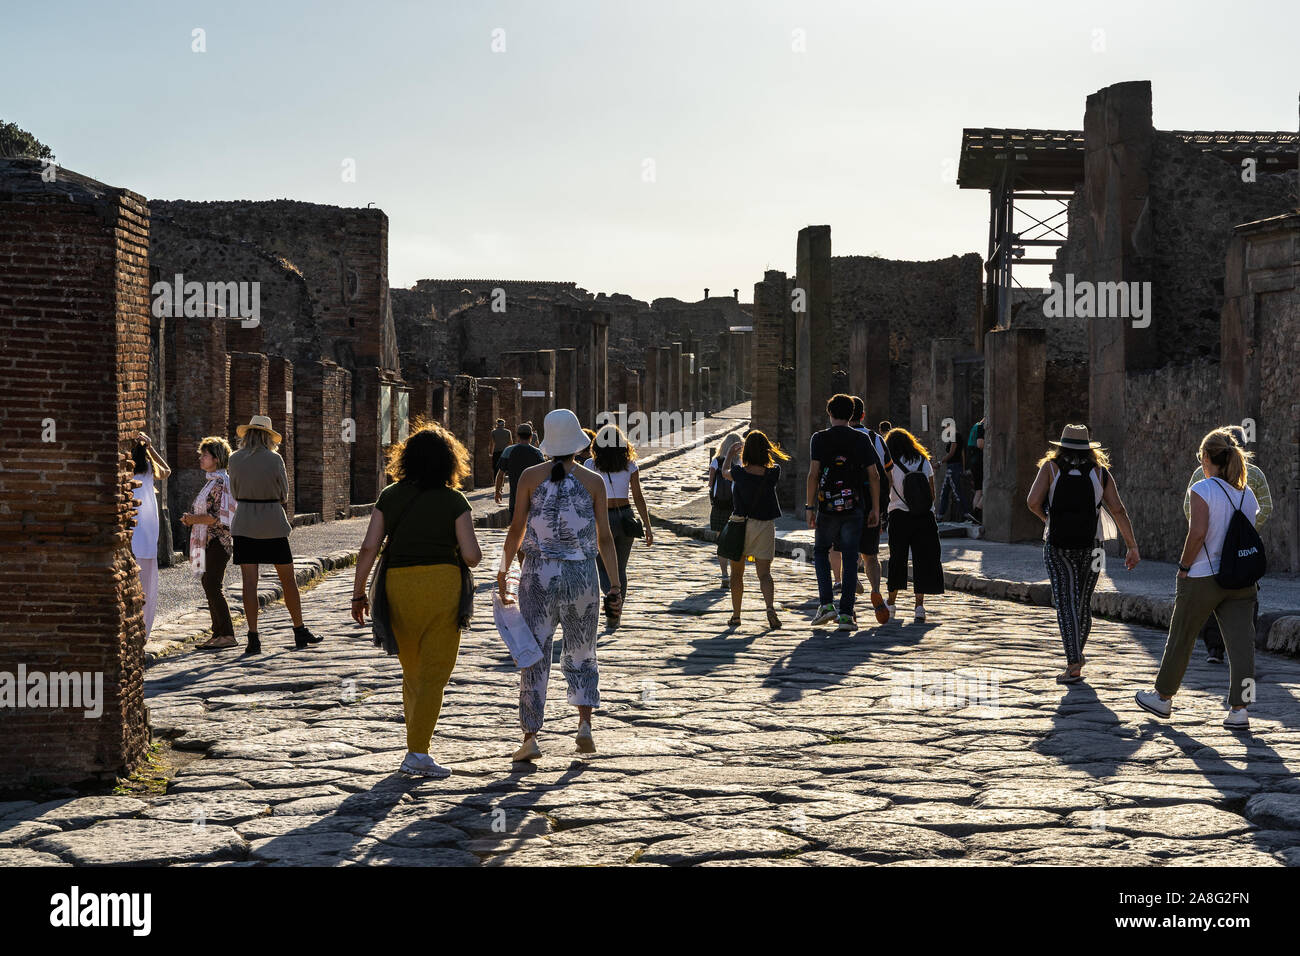 Syndicat parmi les ruines de Pompéi se promener au coucher du soleil sur la Via dell'abbondanza. Pompéi, Italie, Octobre 2019 Banque D'Images